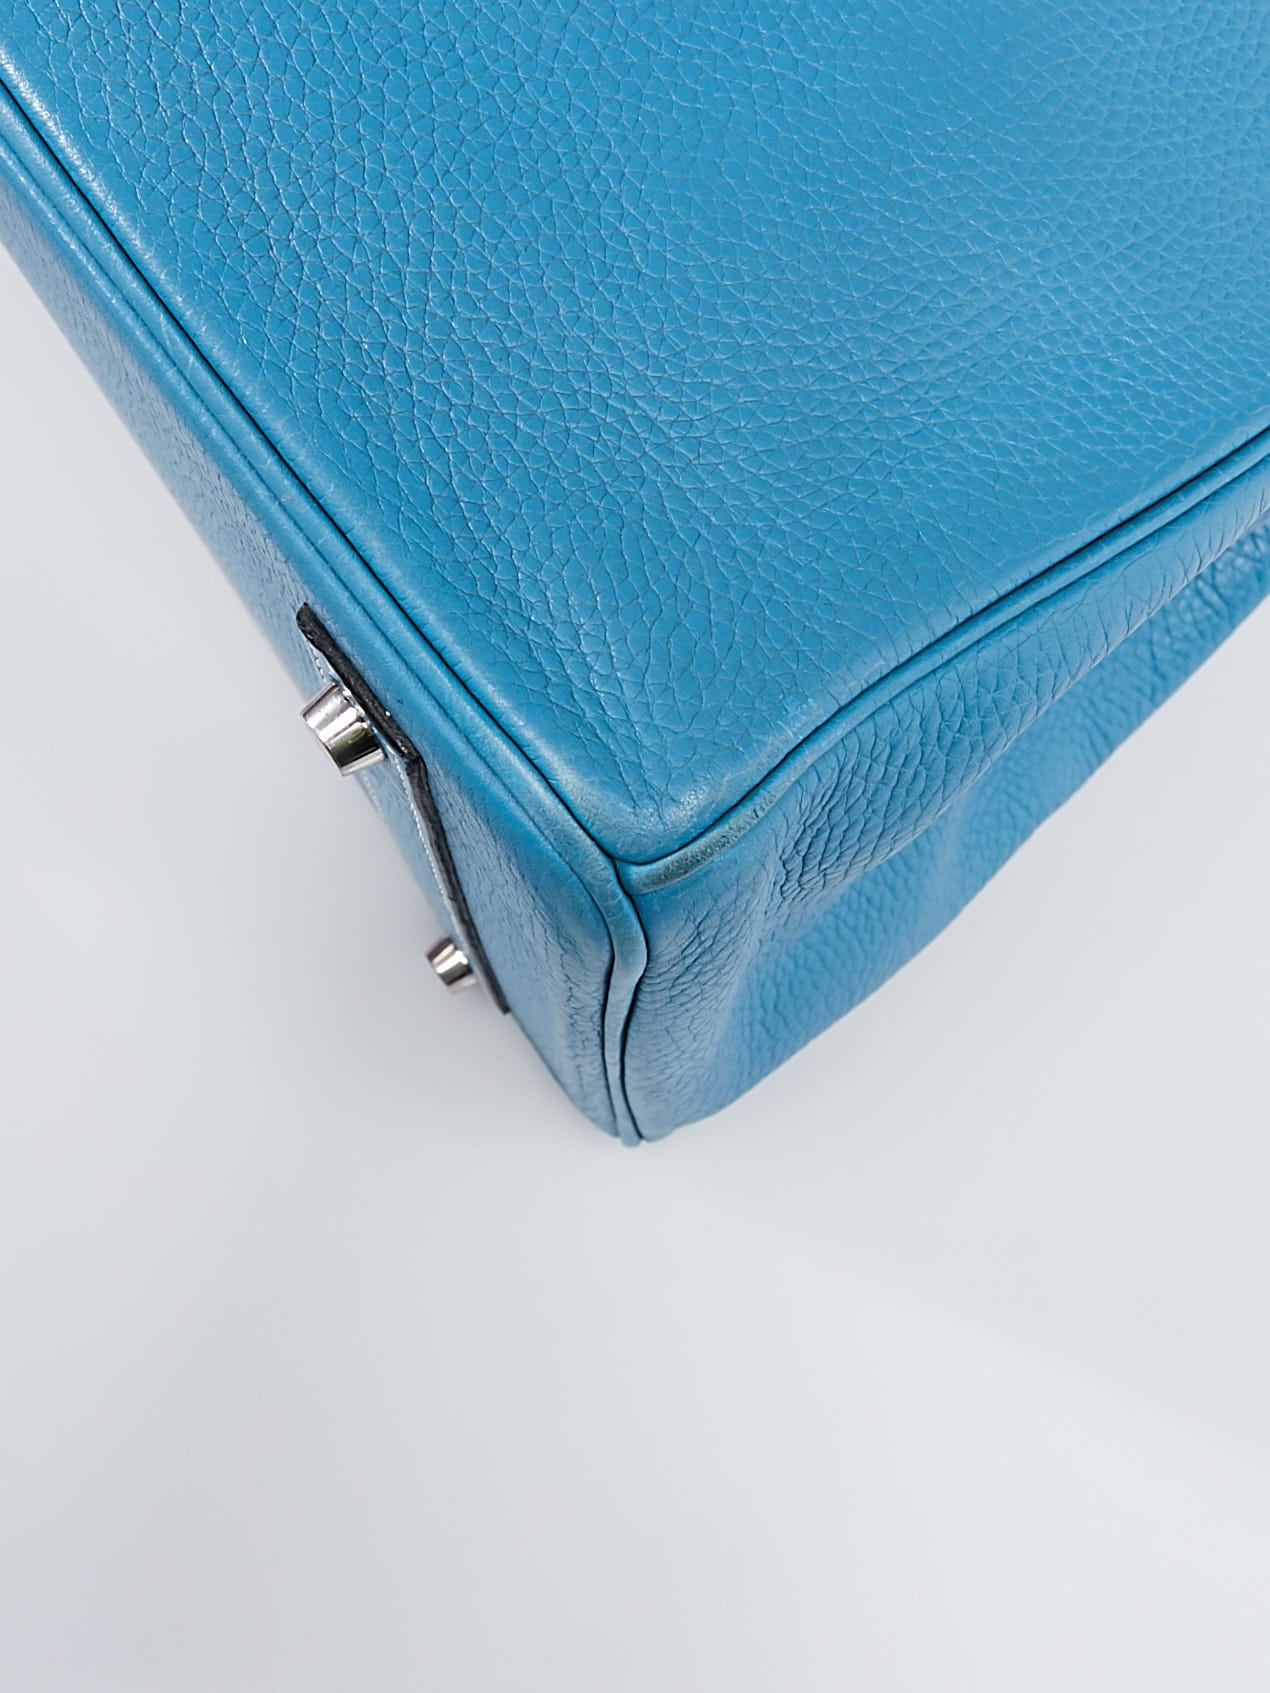 Hermès Birkin 40 Clemence Blue Hydra Bag